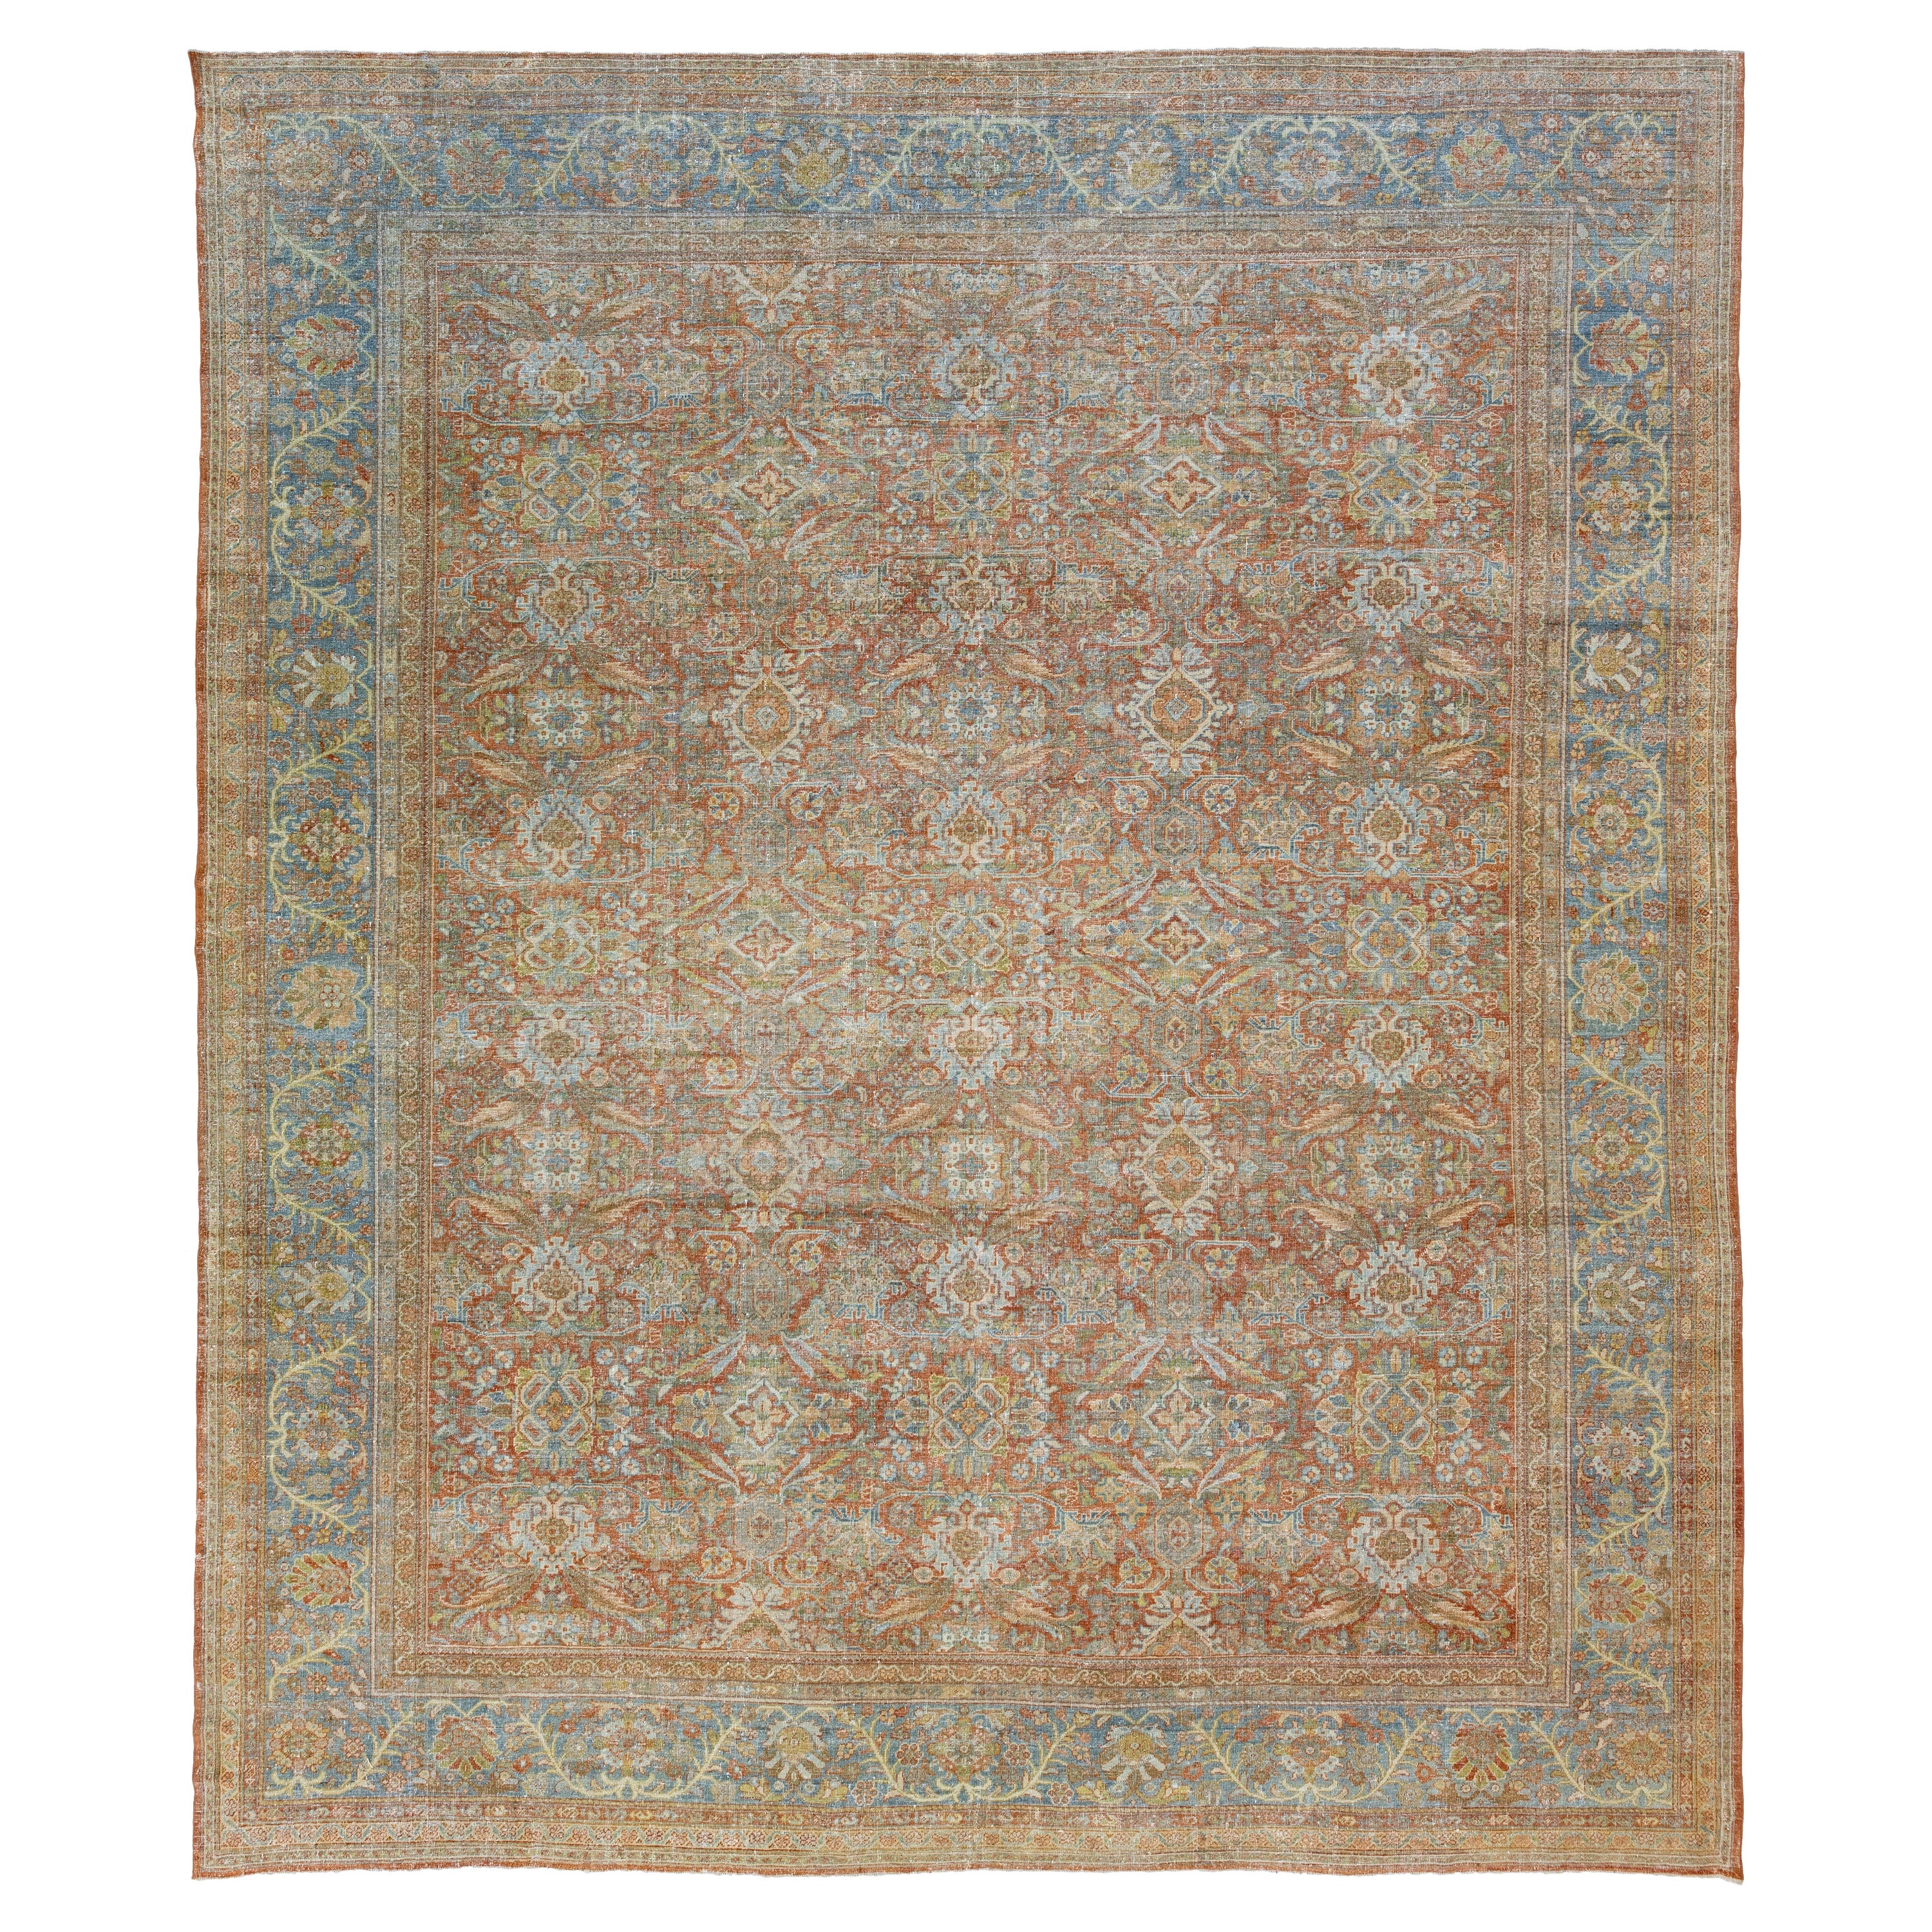 Tapis persan Mahal ancien des années 1900, en laine rouille avec motif floral sur toute la surface